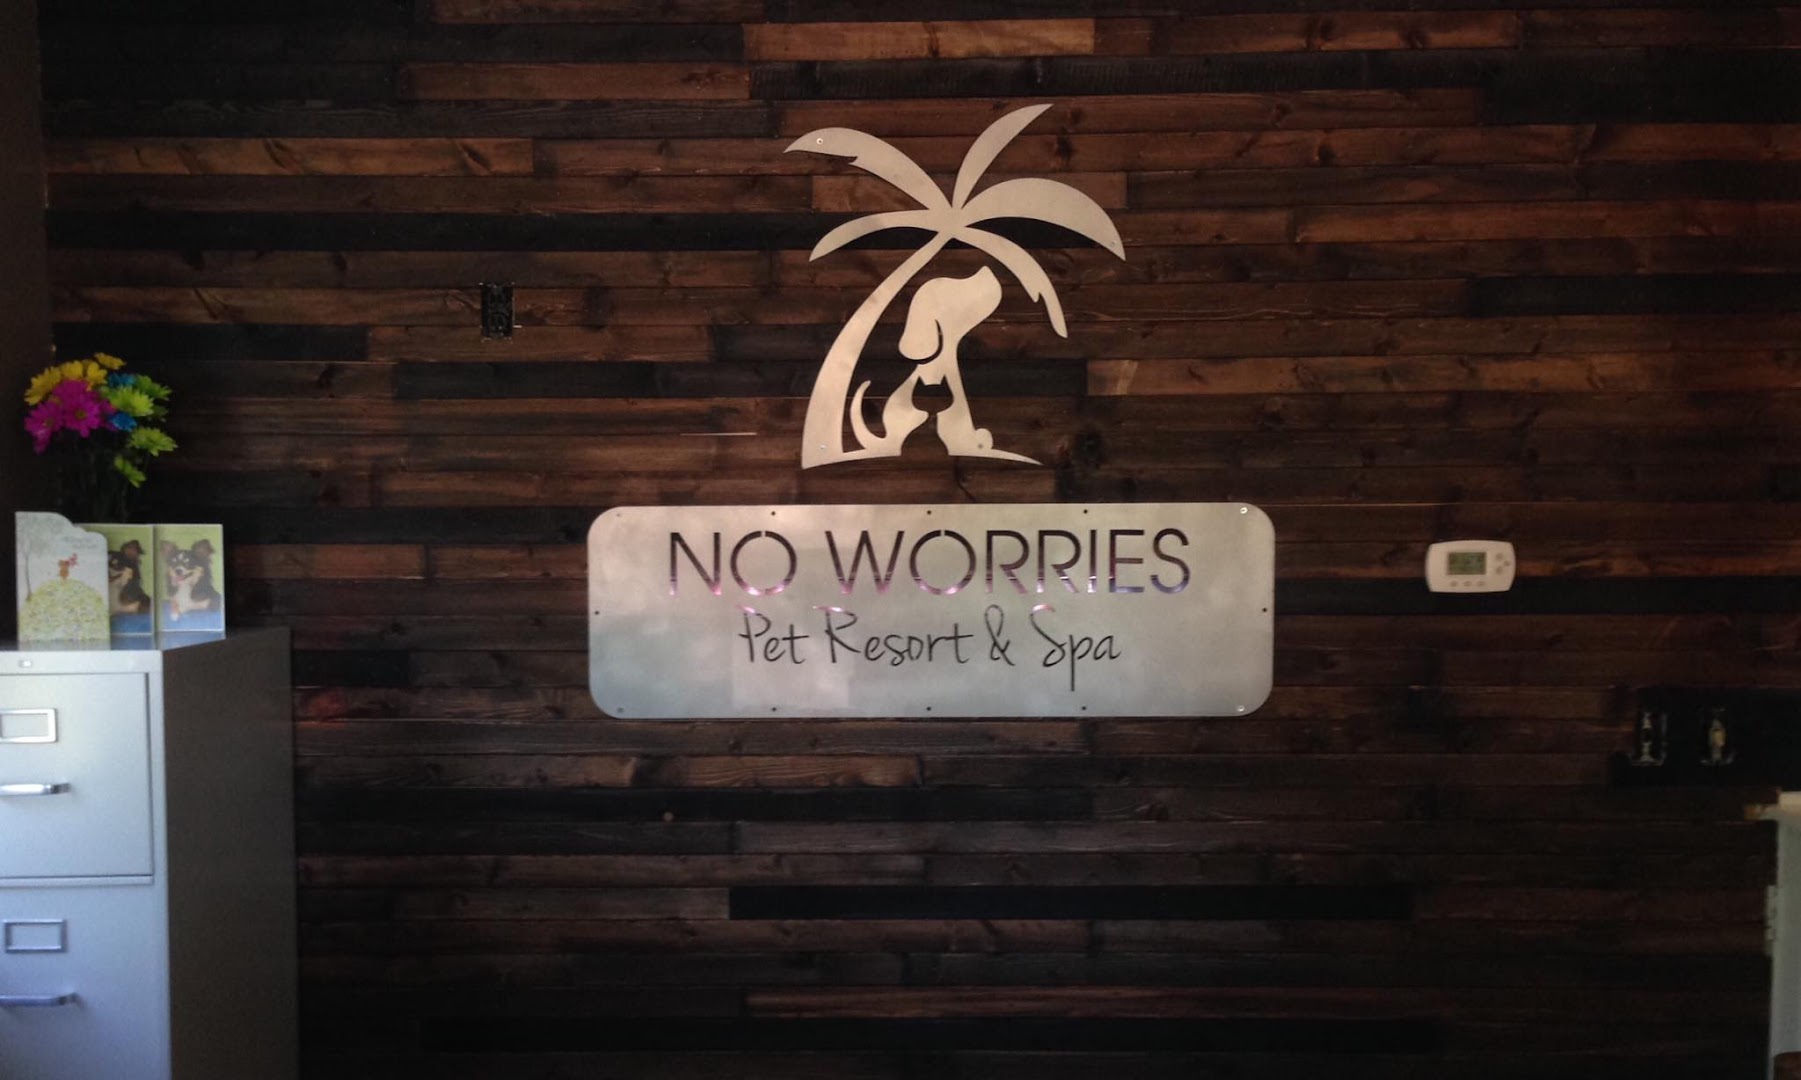 No Worries Pet Resort & Spa, Inc